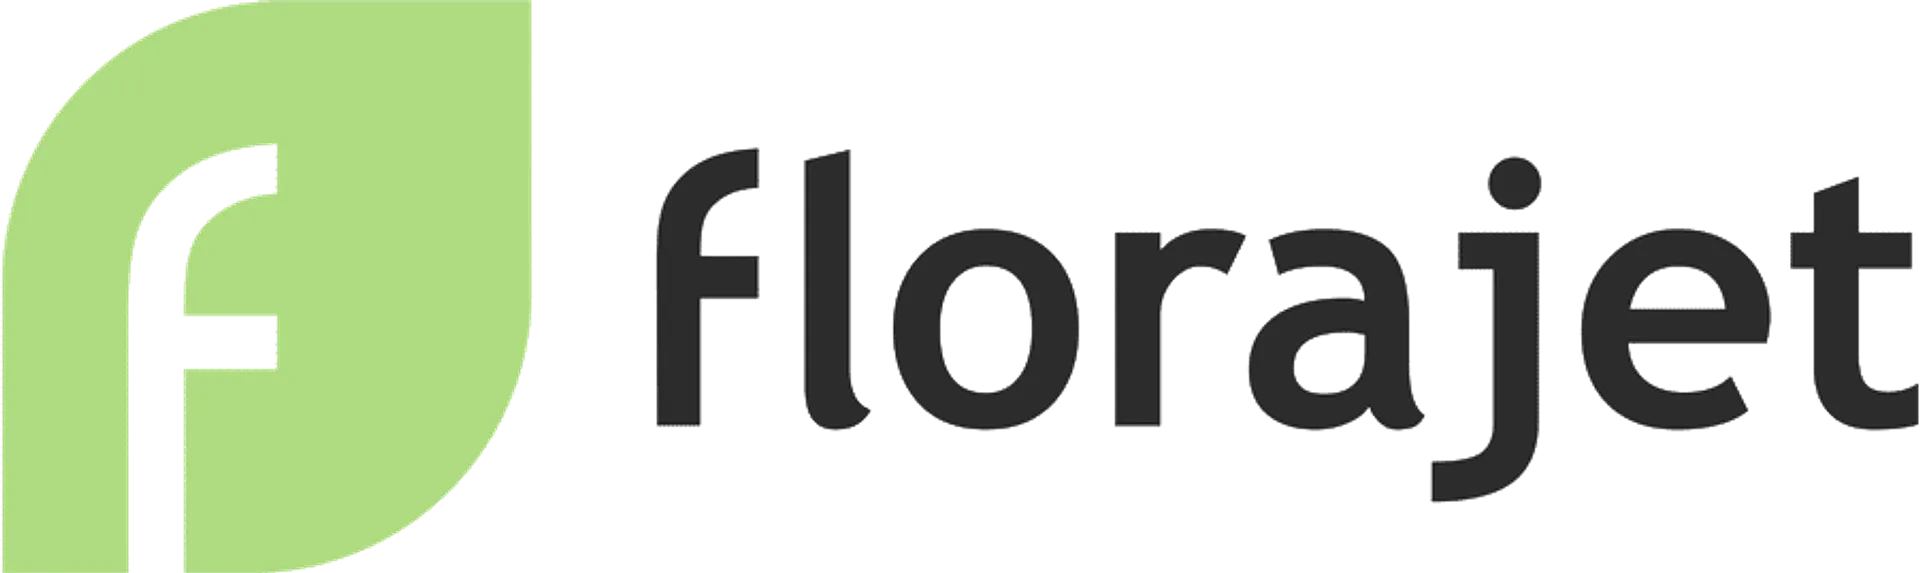 FLORAJET logo du catalogue